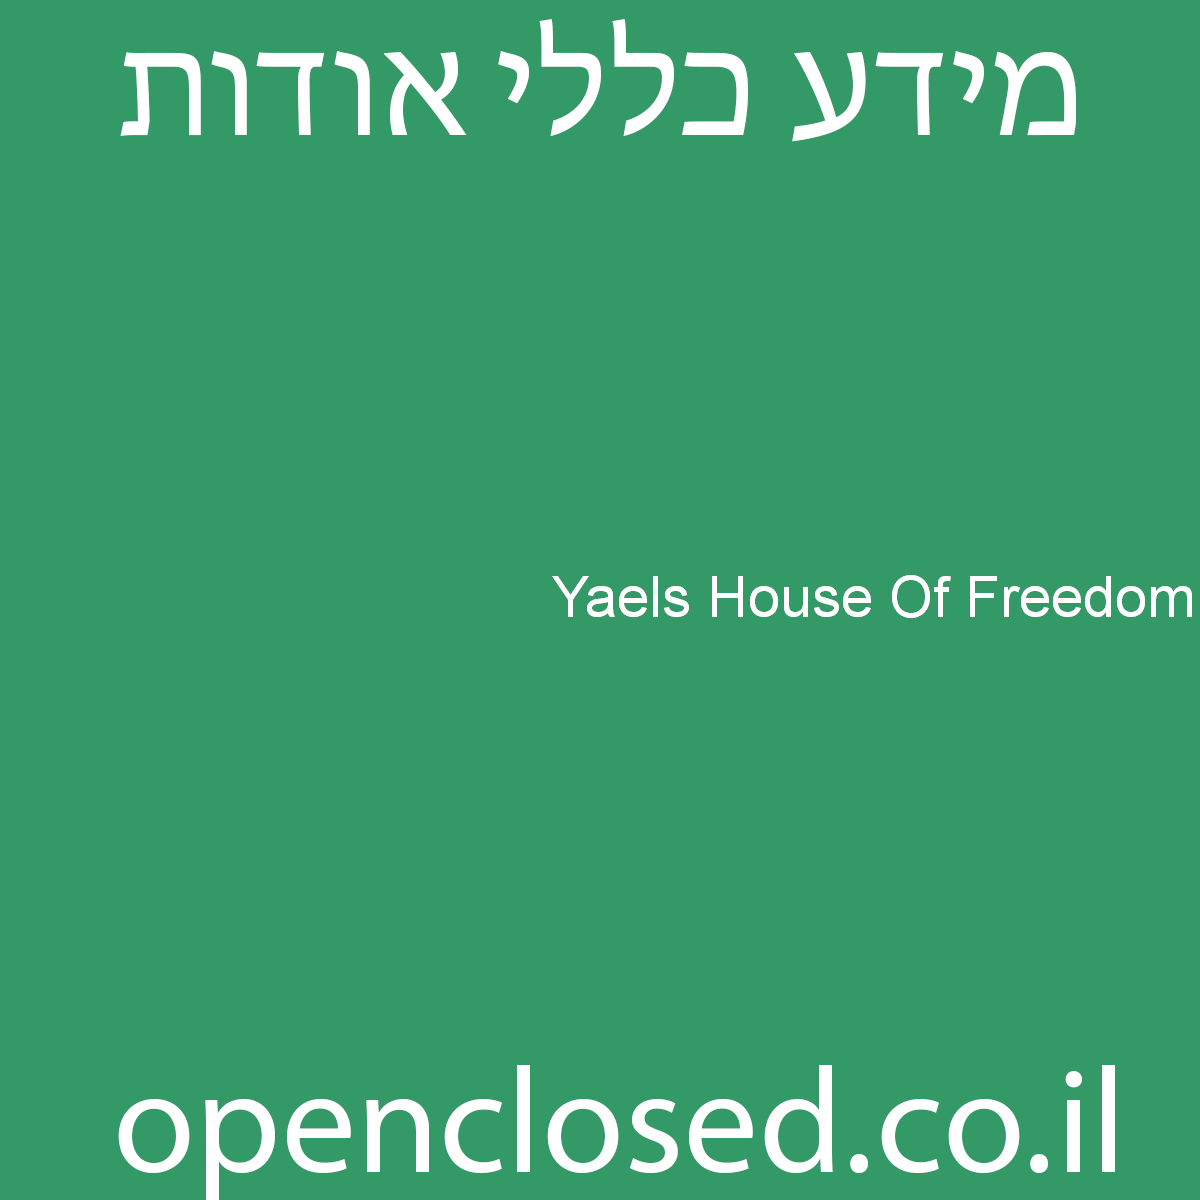 Yaels House Of Freedom